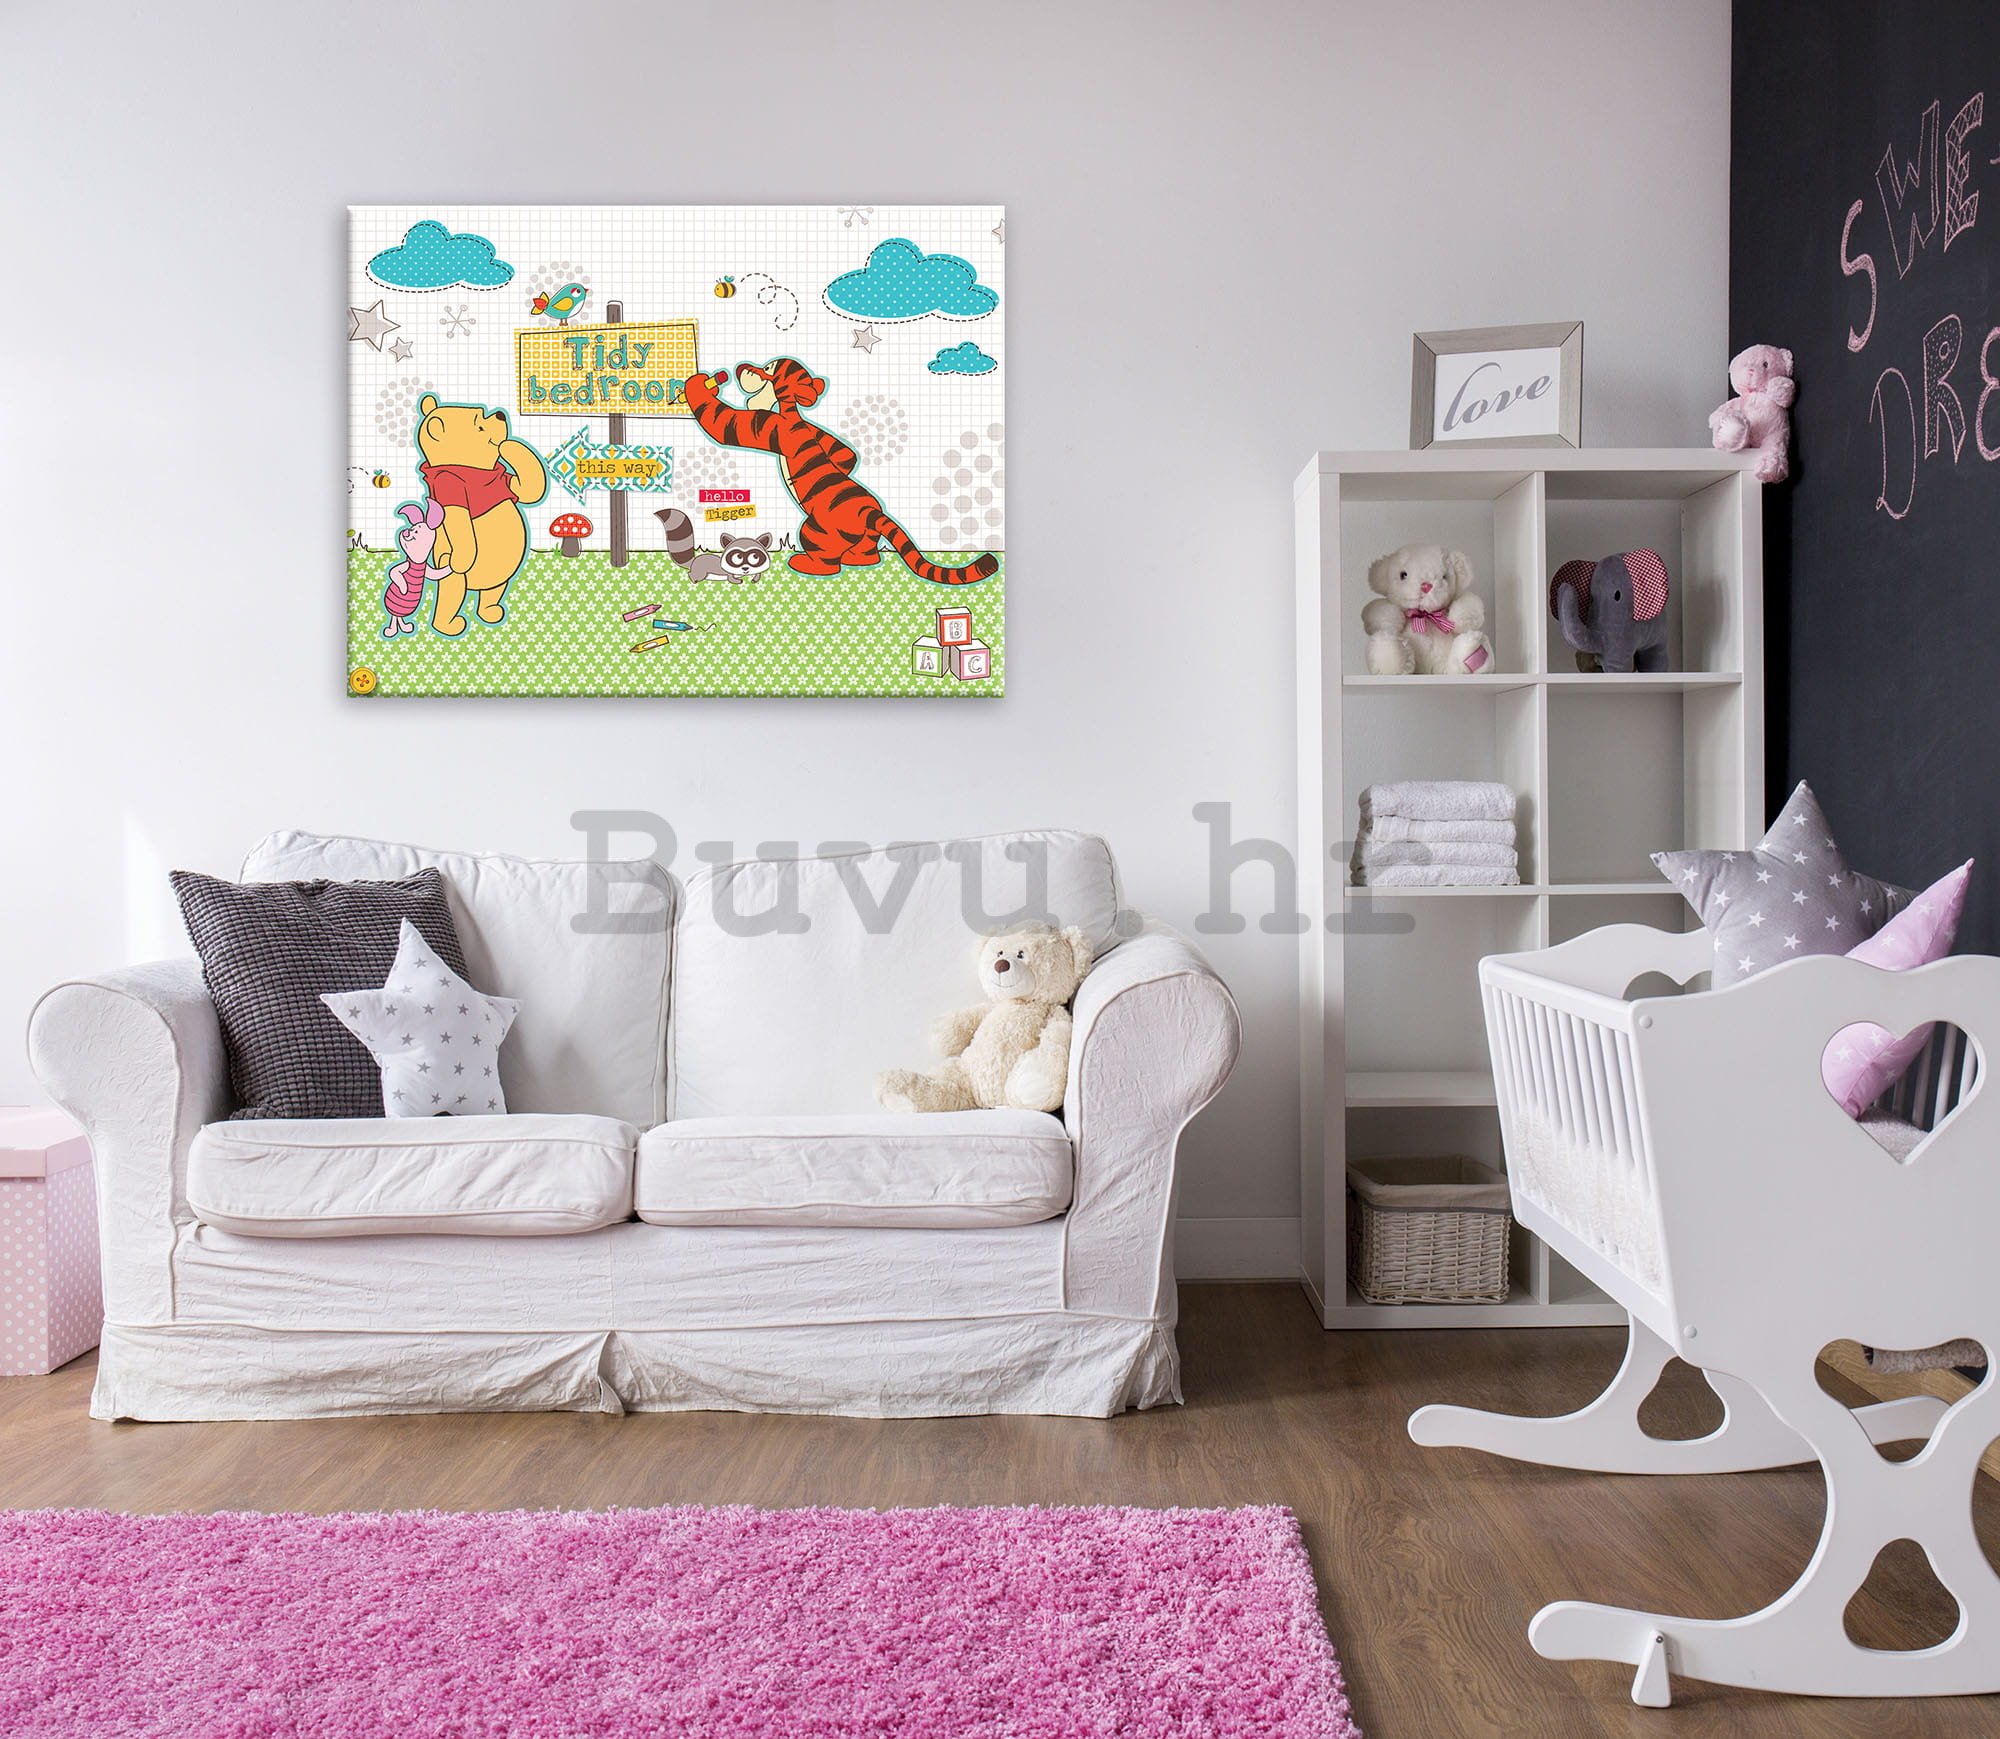 Slika na platnu: Winnie the Pooh (Tidy Bedroom) - 100x75 cm